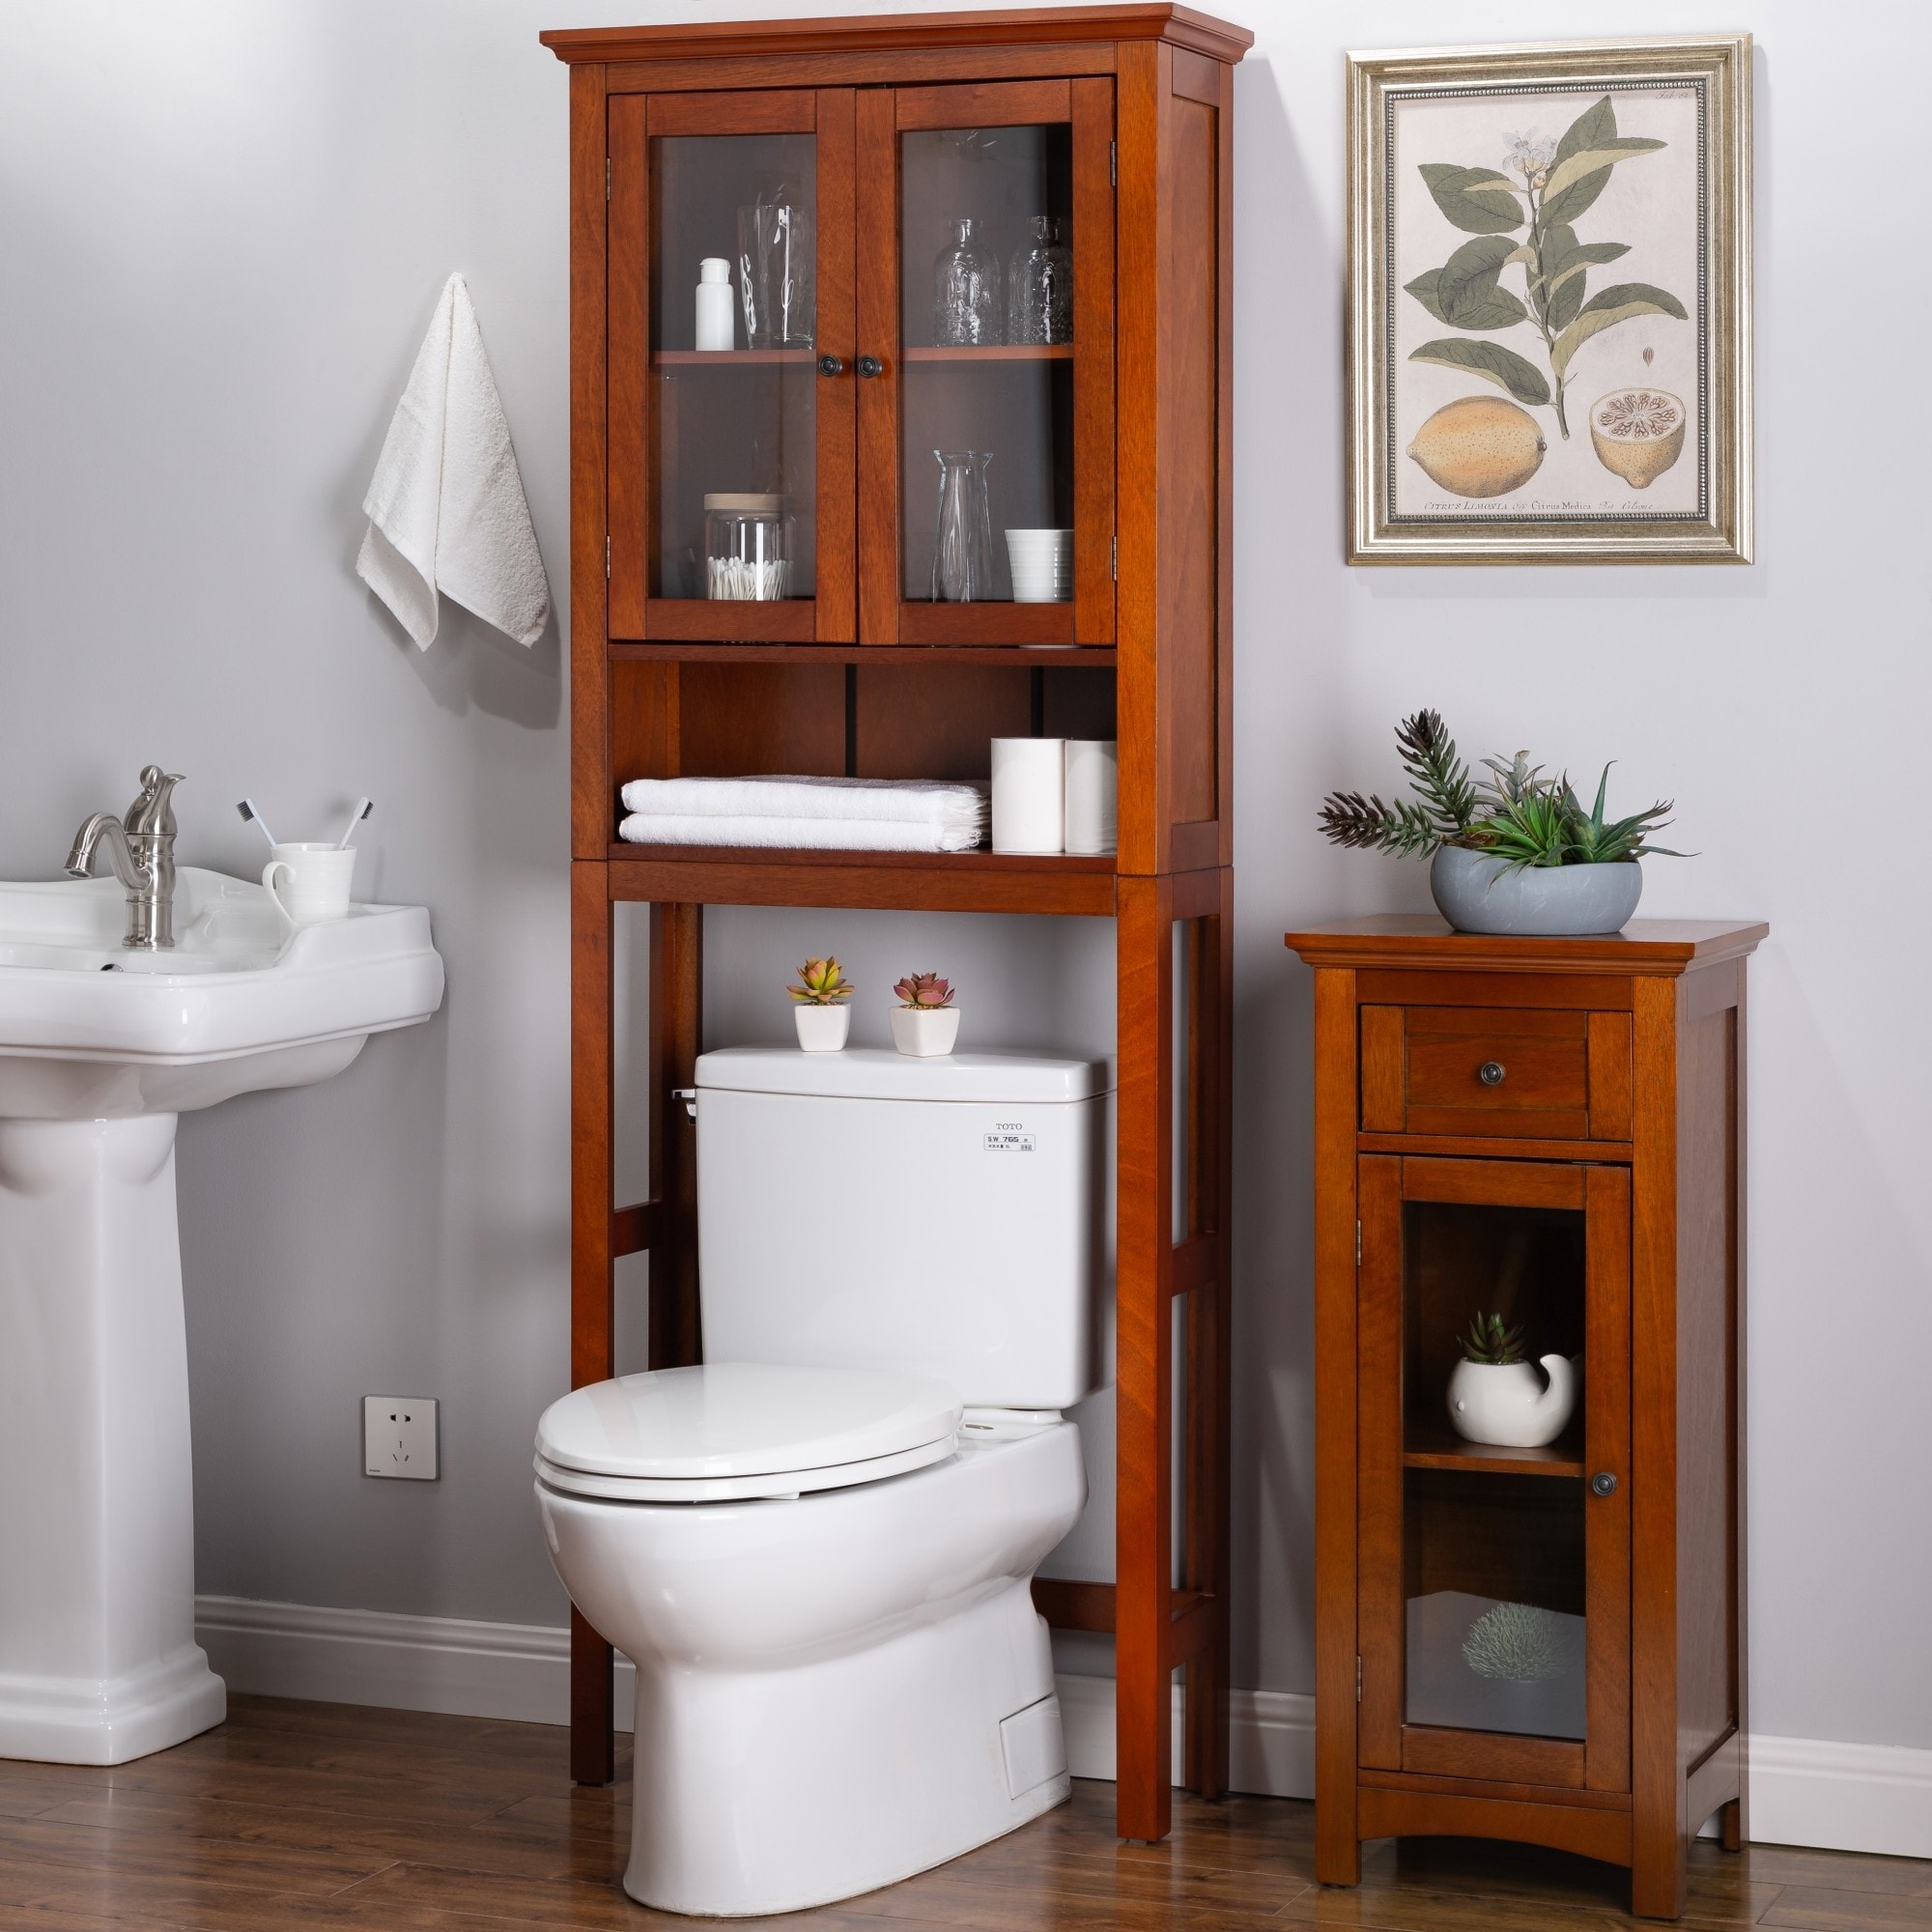 Lovely wood bathroom space saver Glitzhome 5 7ft Modern Drop Door Bathroom Spacesaver Floor Storage Cabinet Overstock 19219839